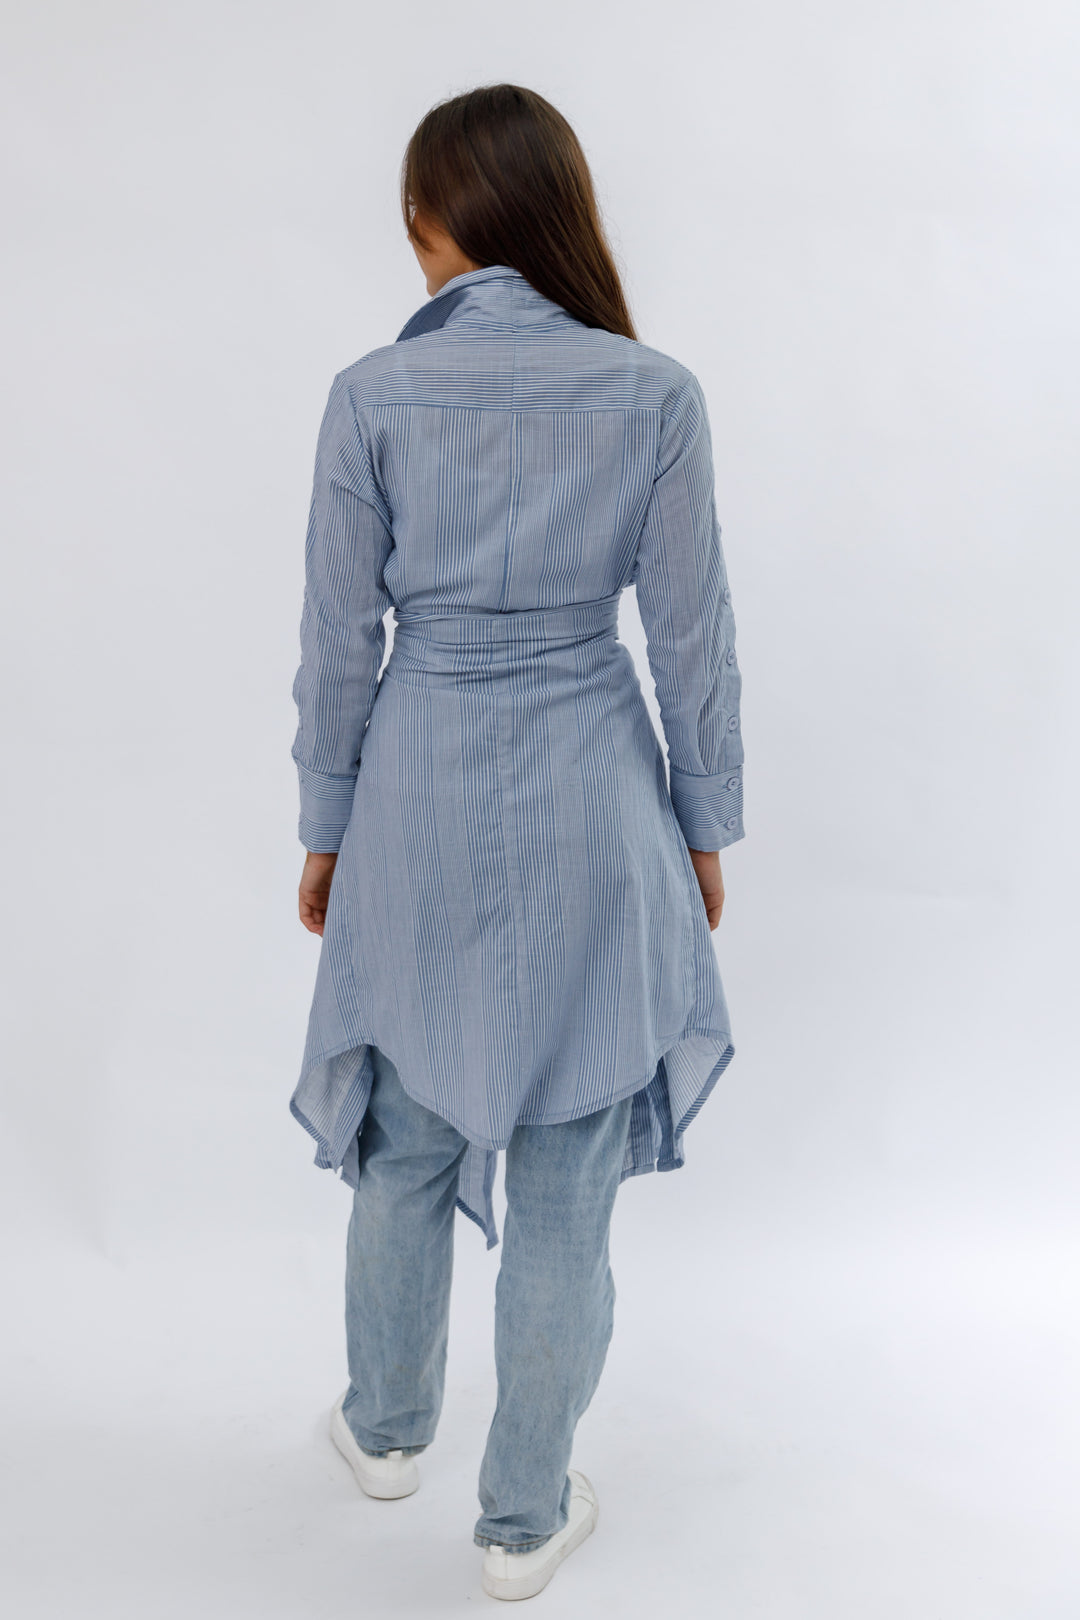 Italian Linen Coat Dress - Pale Blue Pinstripe